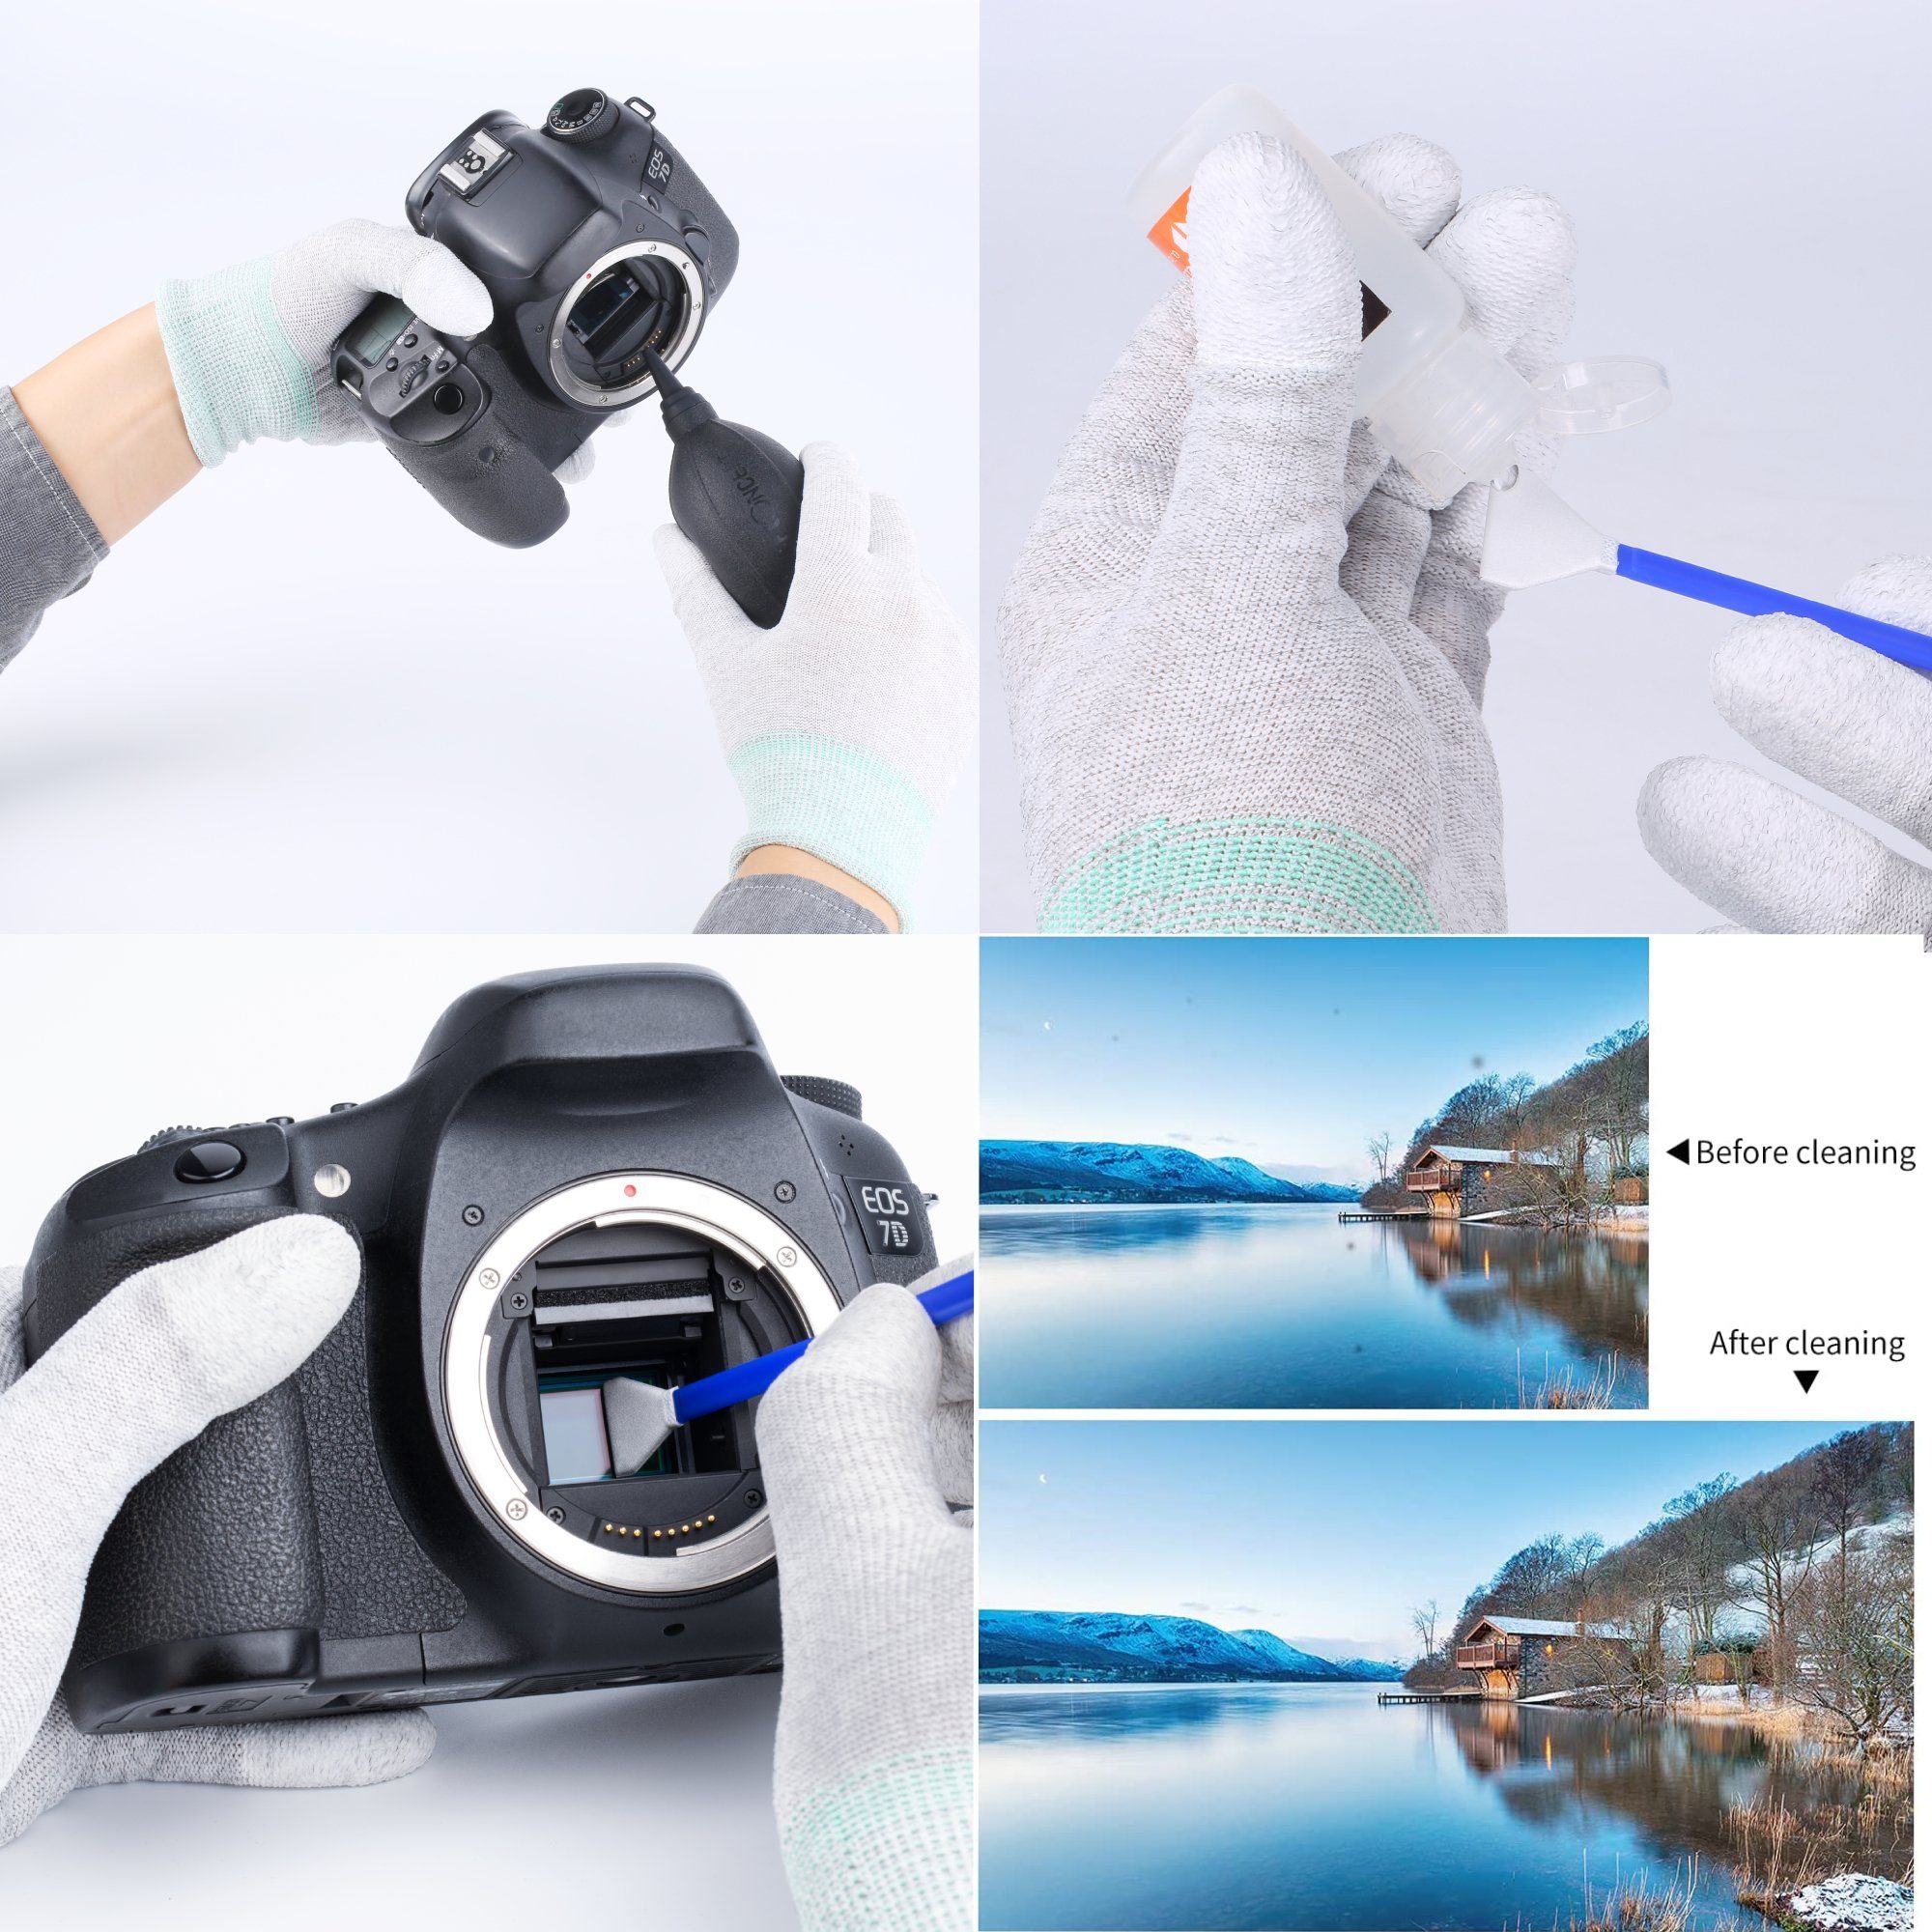 Reinigung Full-Frame Objektiv für SET Kamera Kamerazubehör-Set Minadax KF Sensor Sensor Komplett